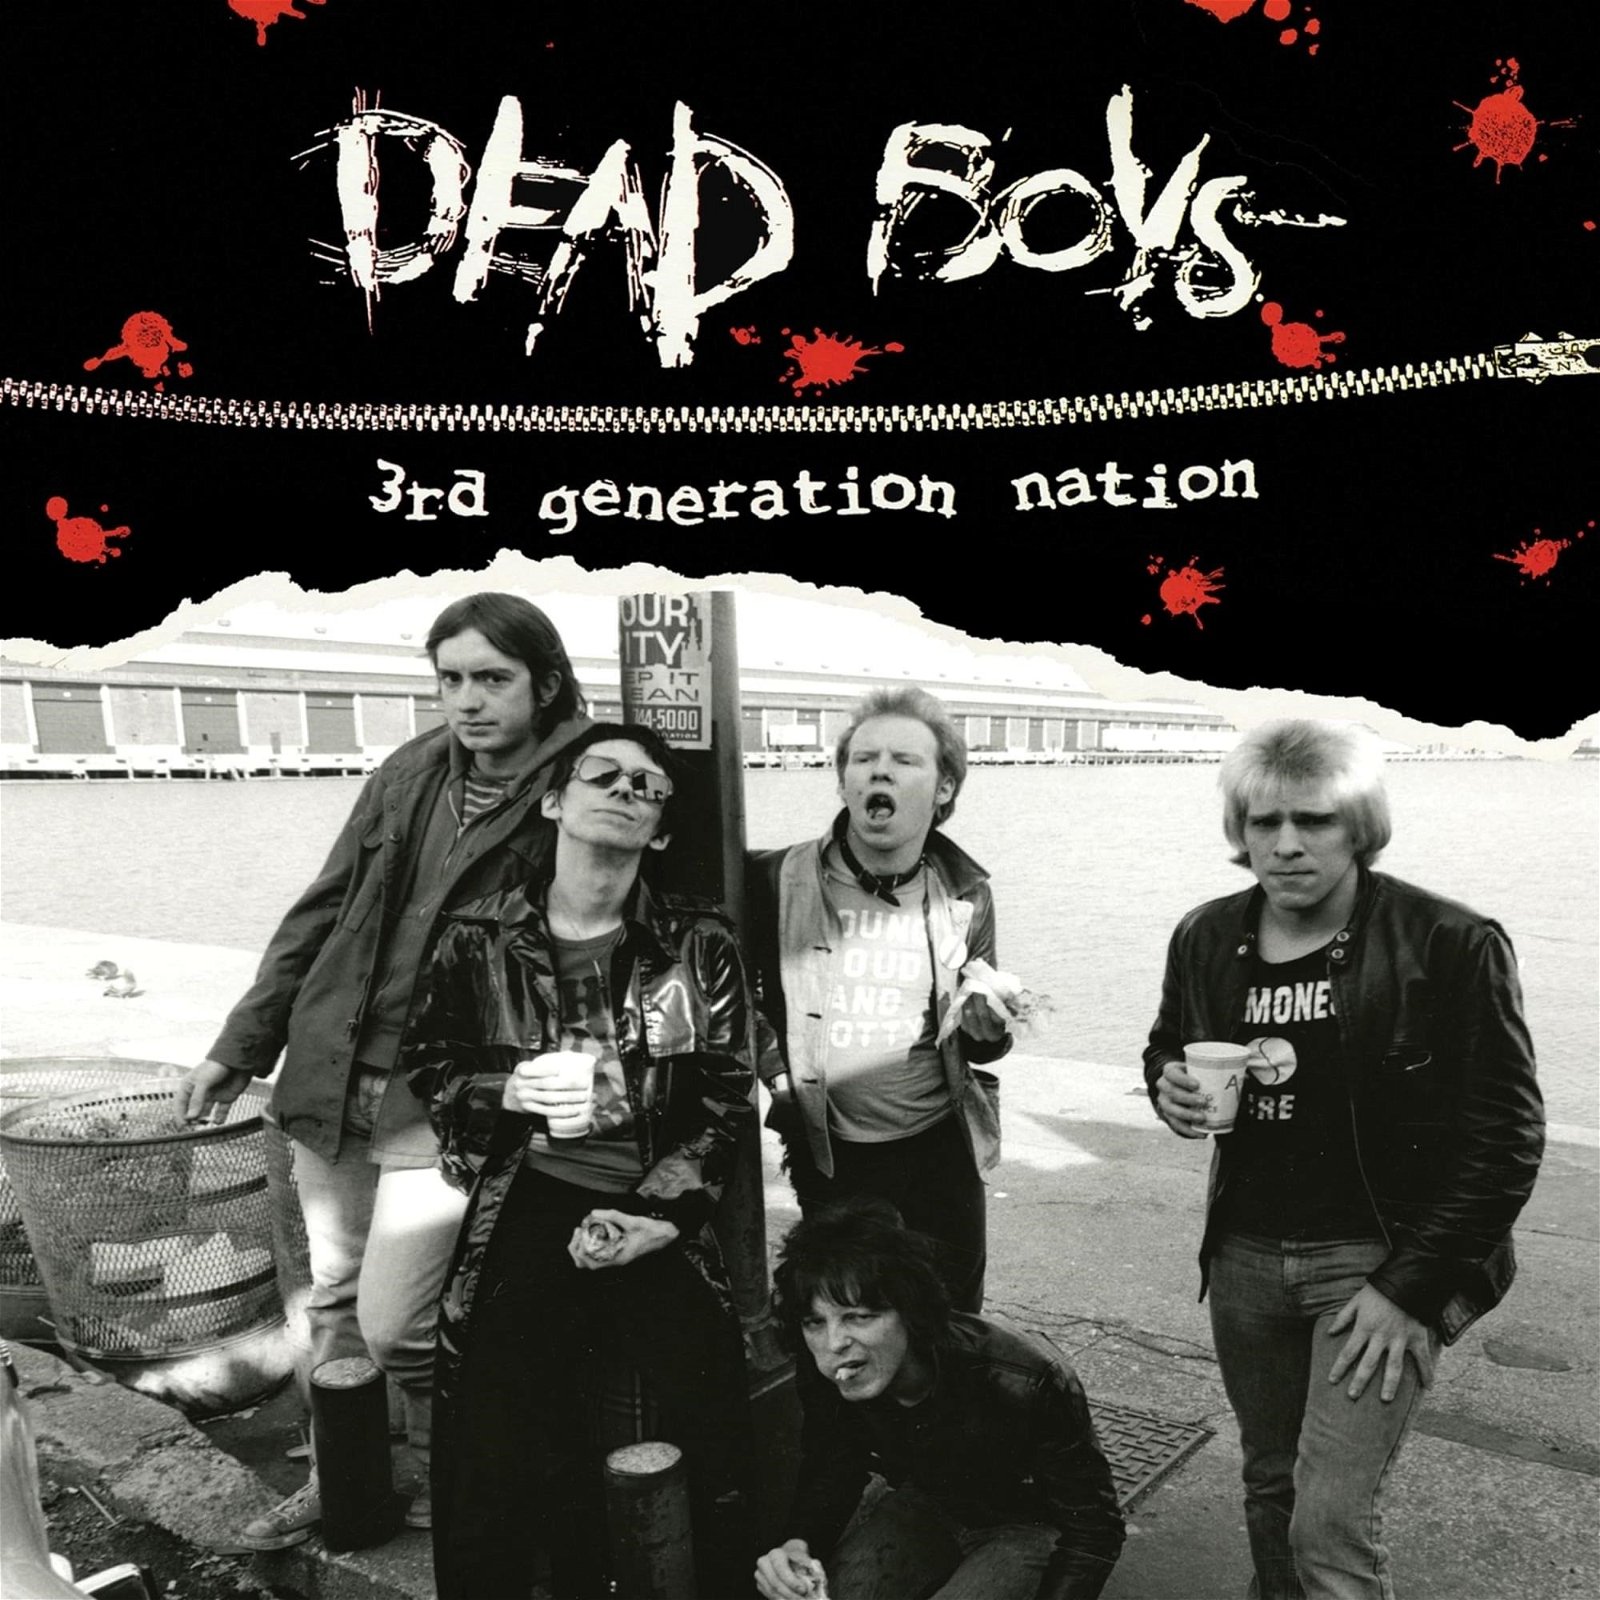 CD Shop - DEAD BOYS 3RD GENERATION NATION